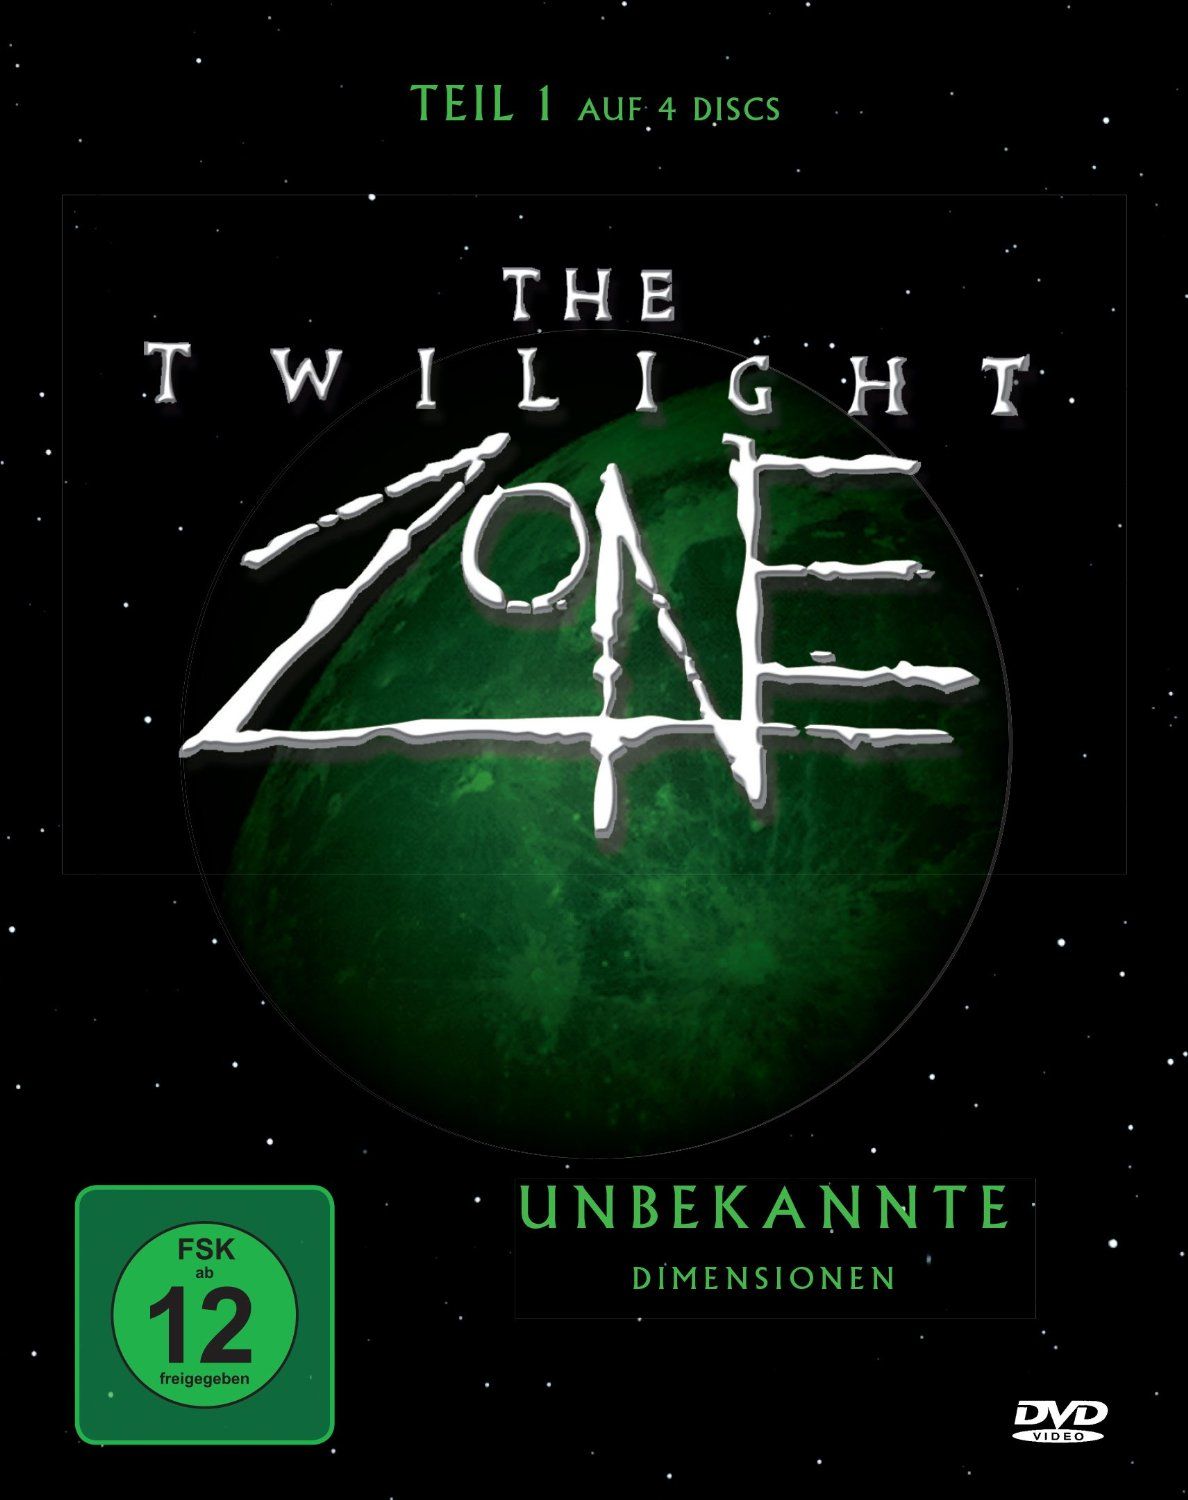 Twilight Zone, The - Unbekannte Dimensionen - Teil 1 (1985) (4 Discs)